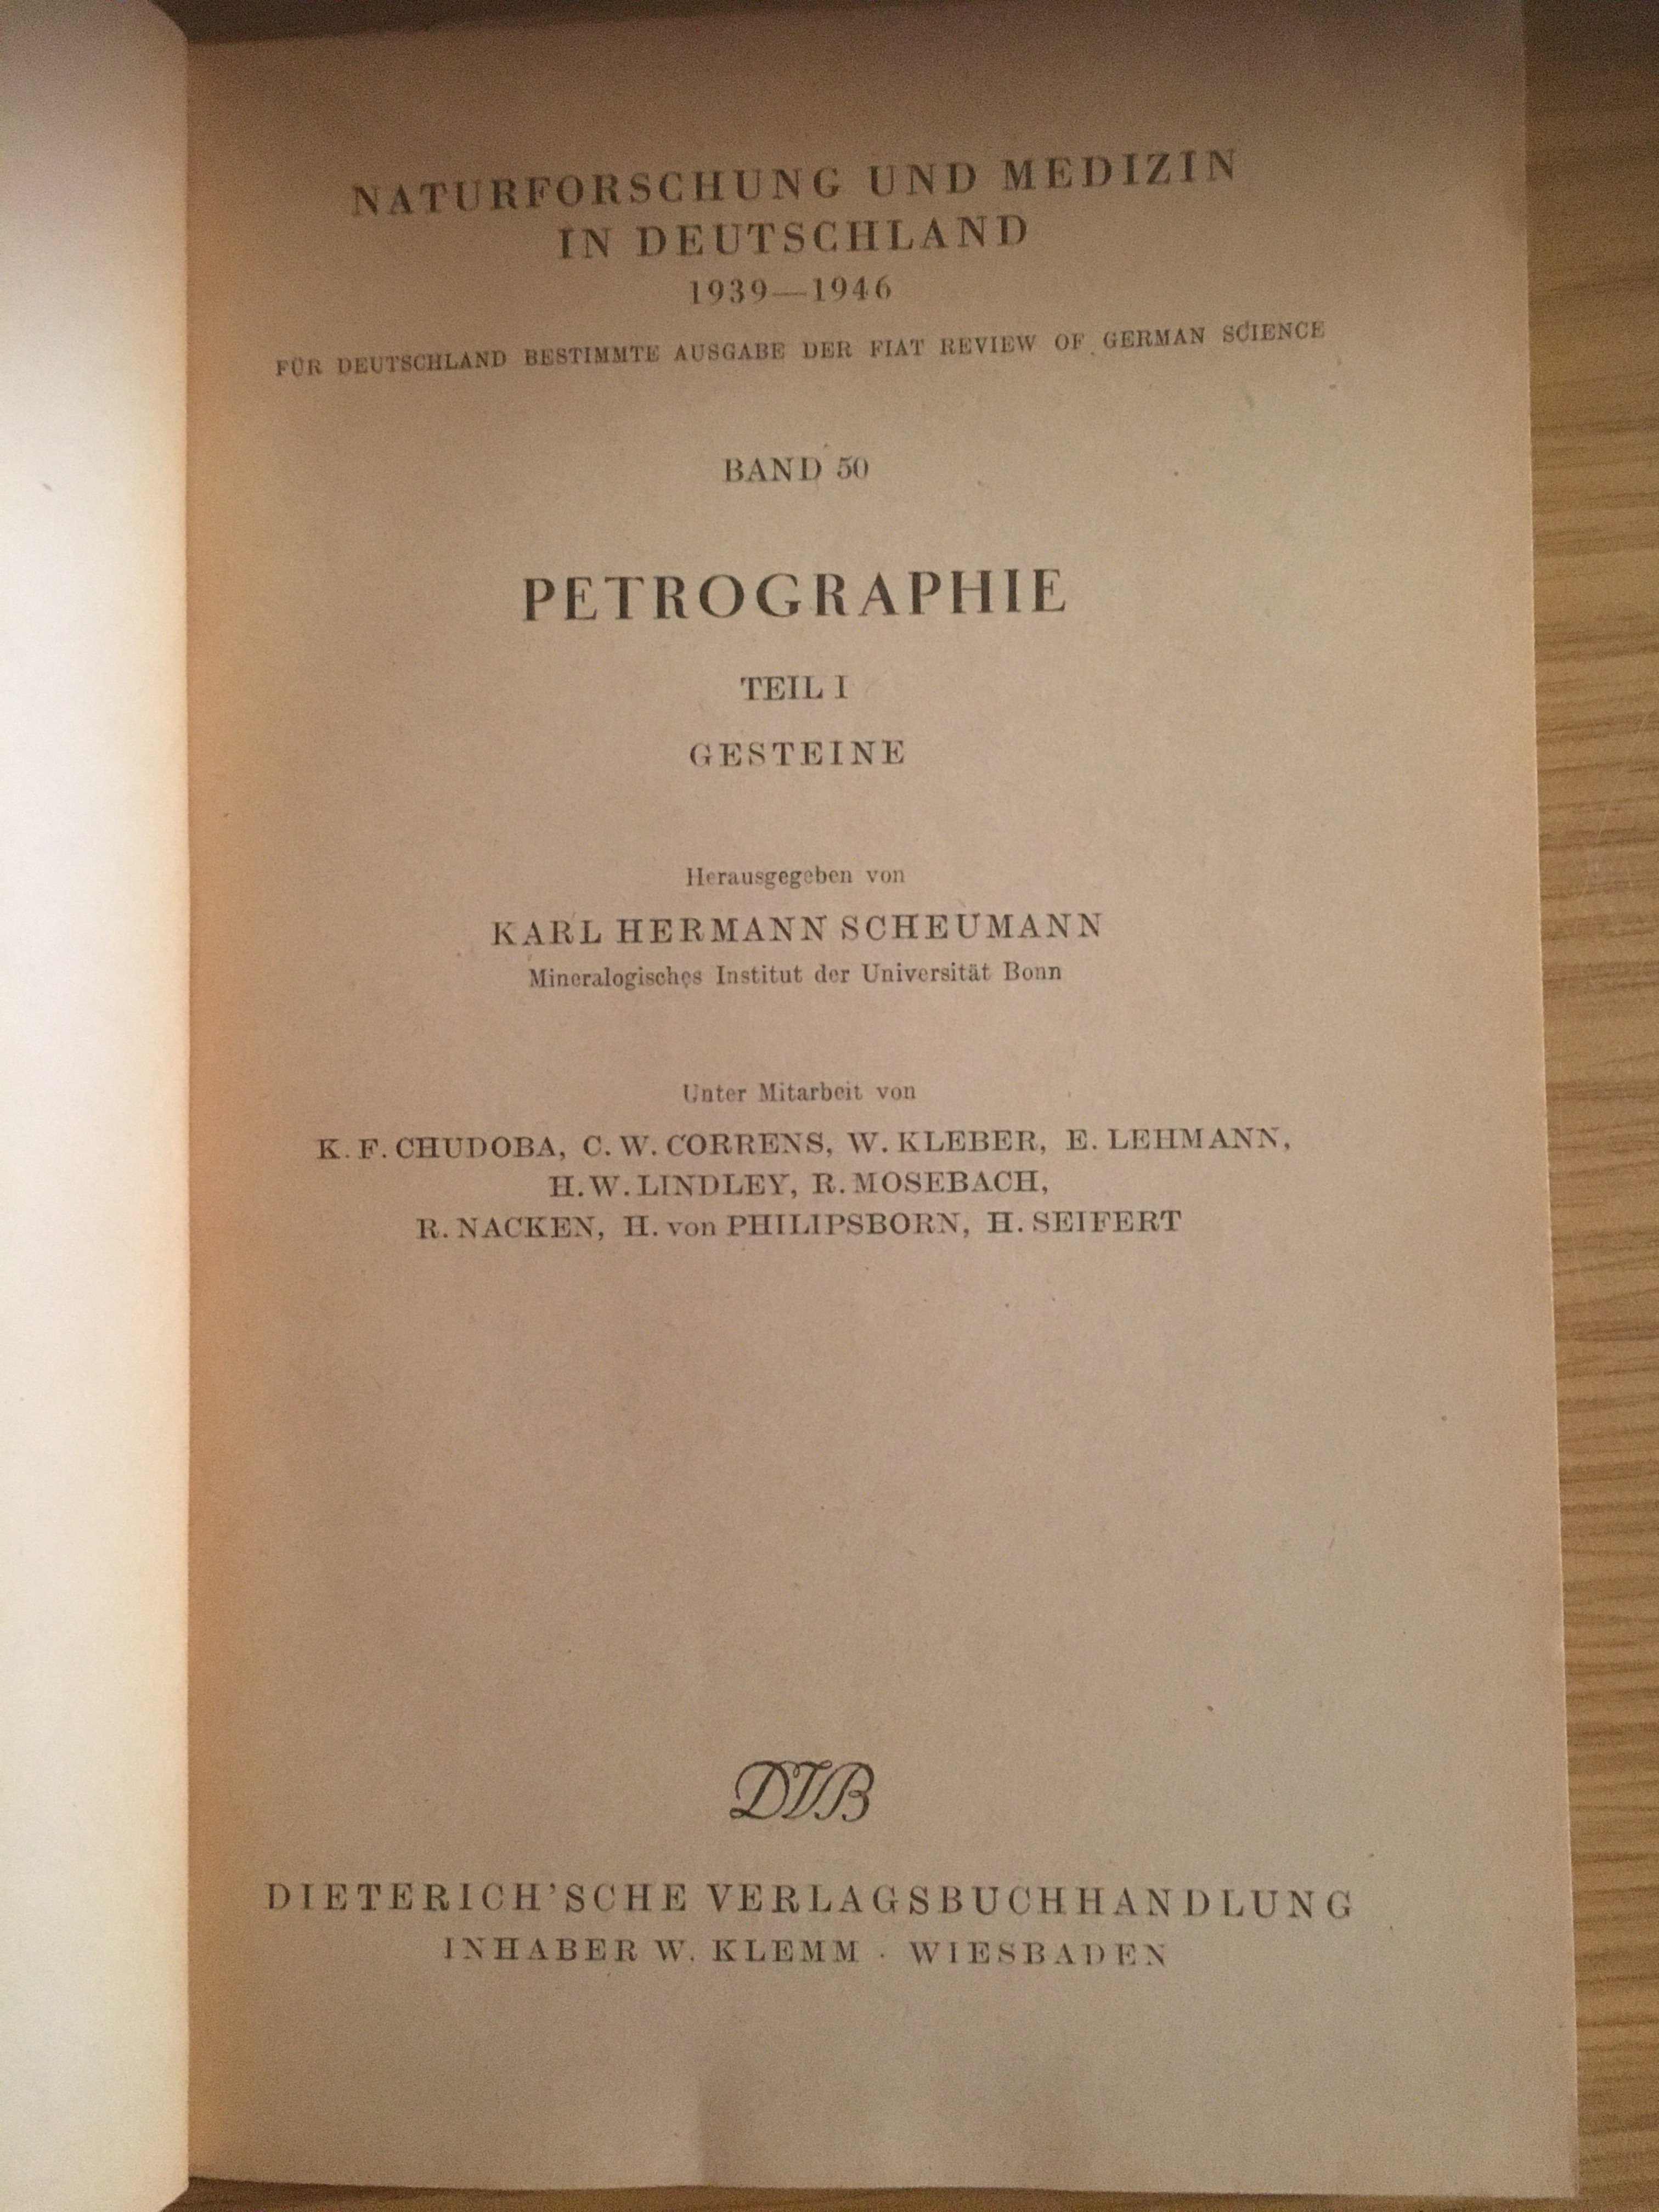 Scheumann, Karl Hermann: Petrographie. Teil 1, Gesteine. (Besucherbergwerk und Bergbaumuseum "Grube Silberhardt" CC BY-NC-SA)